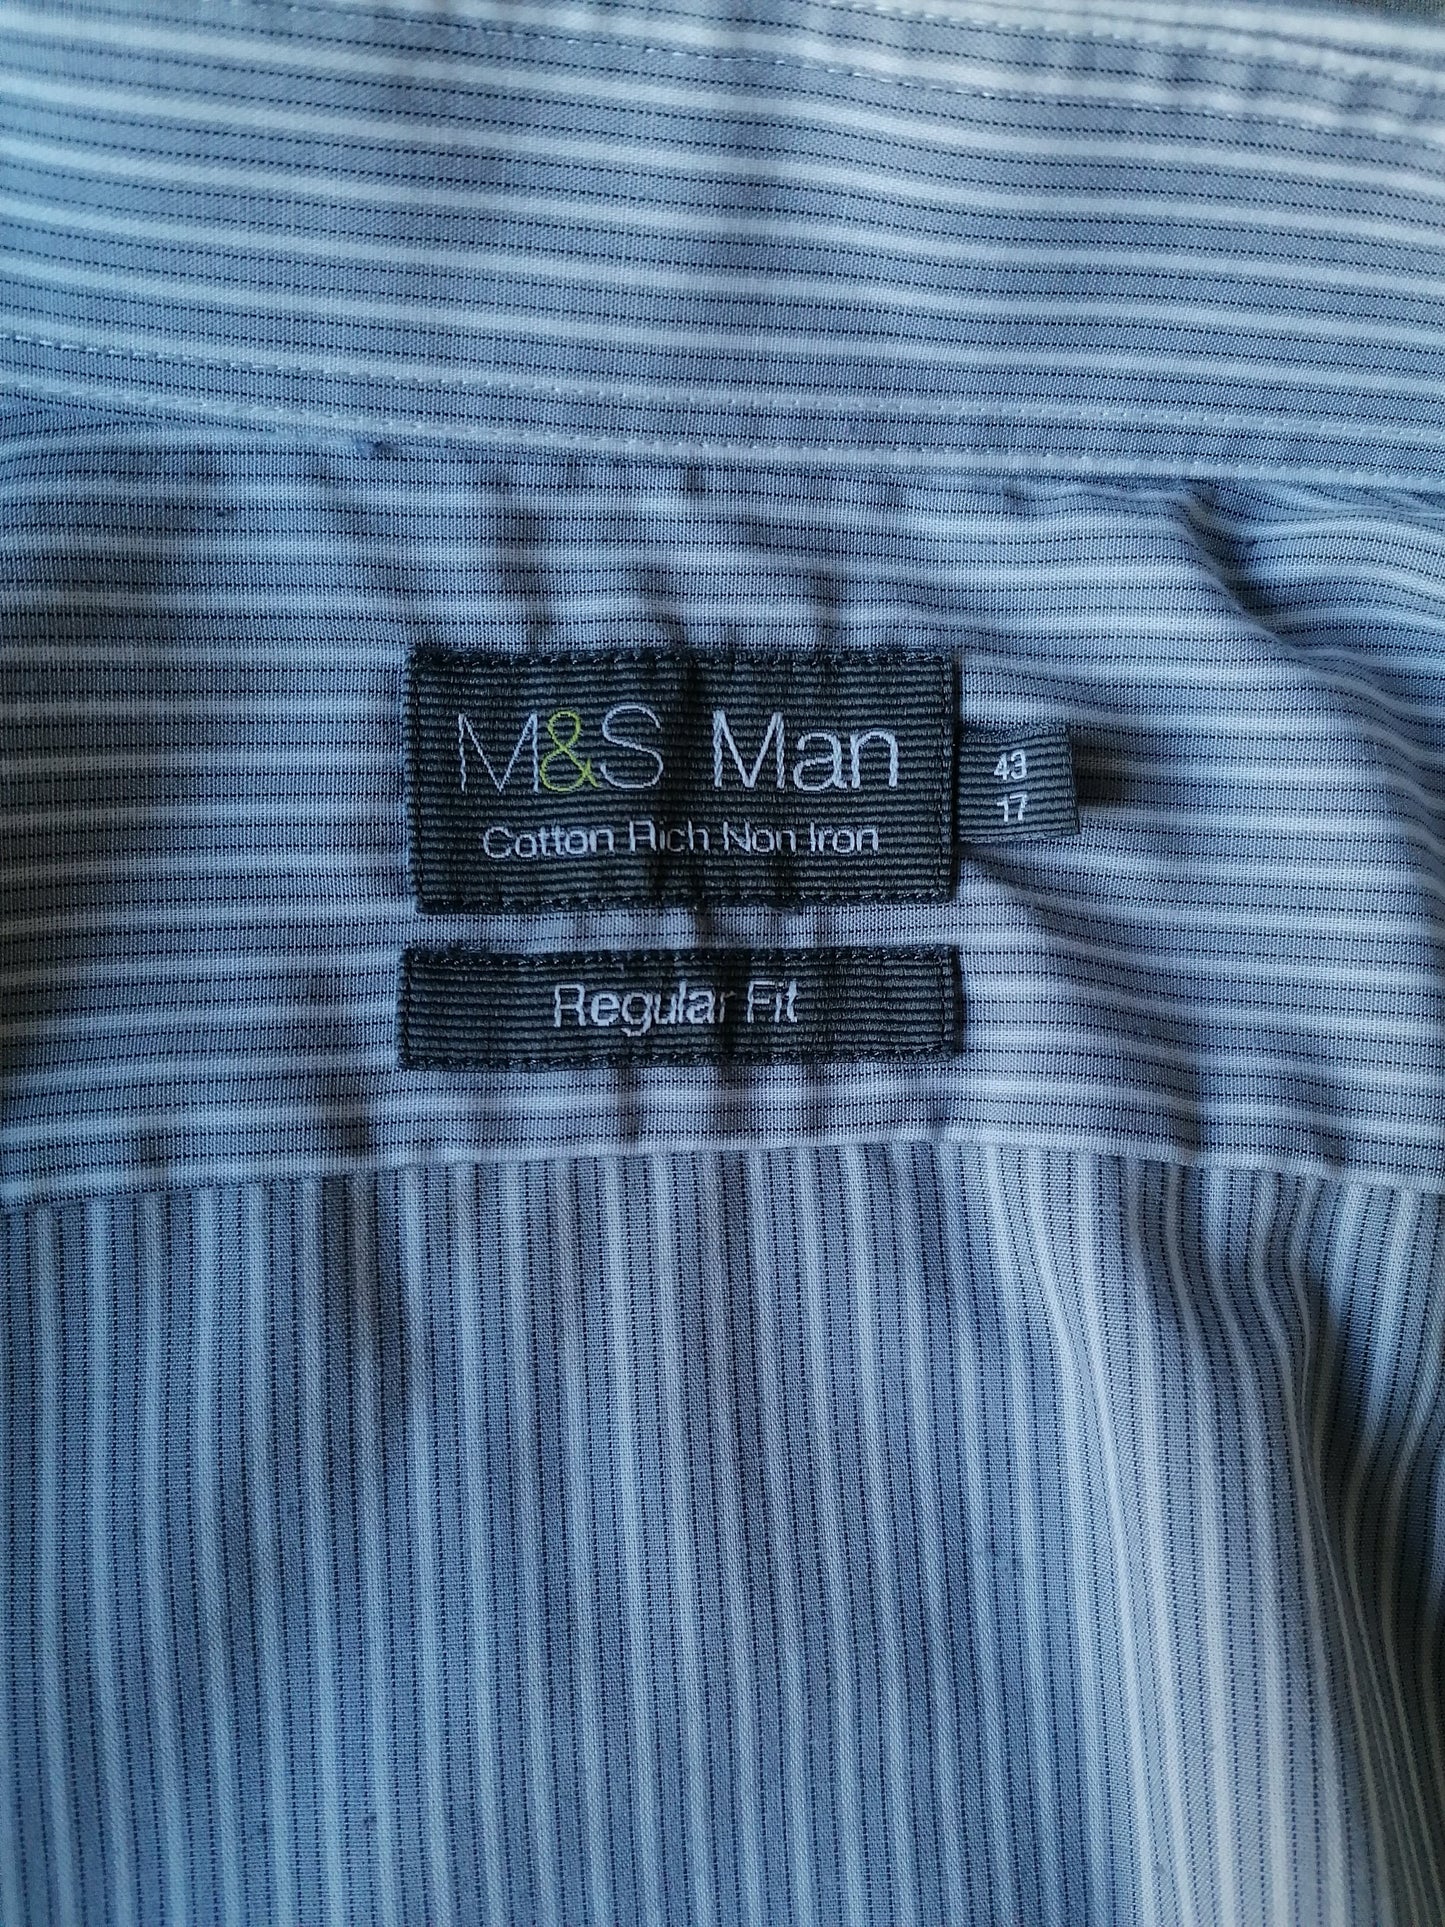 Chemise M&S Man (Marks & Spencer). Gris blanc rayé. Taille 43 / XL. Ajustement régulier.